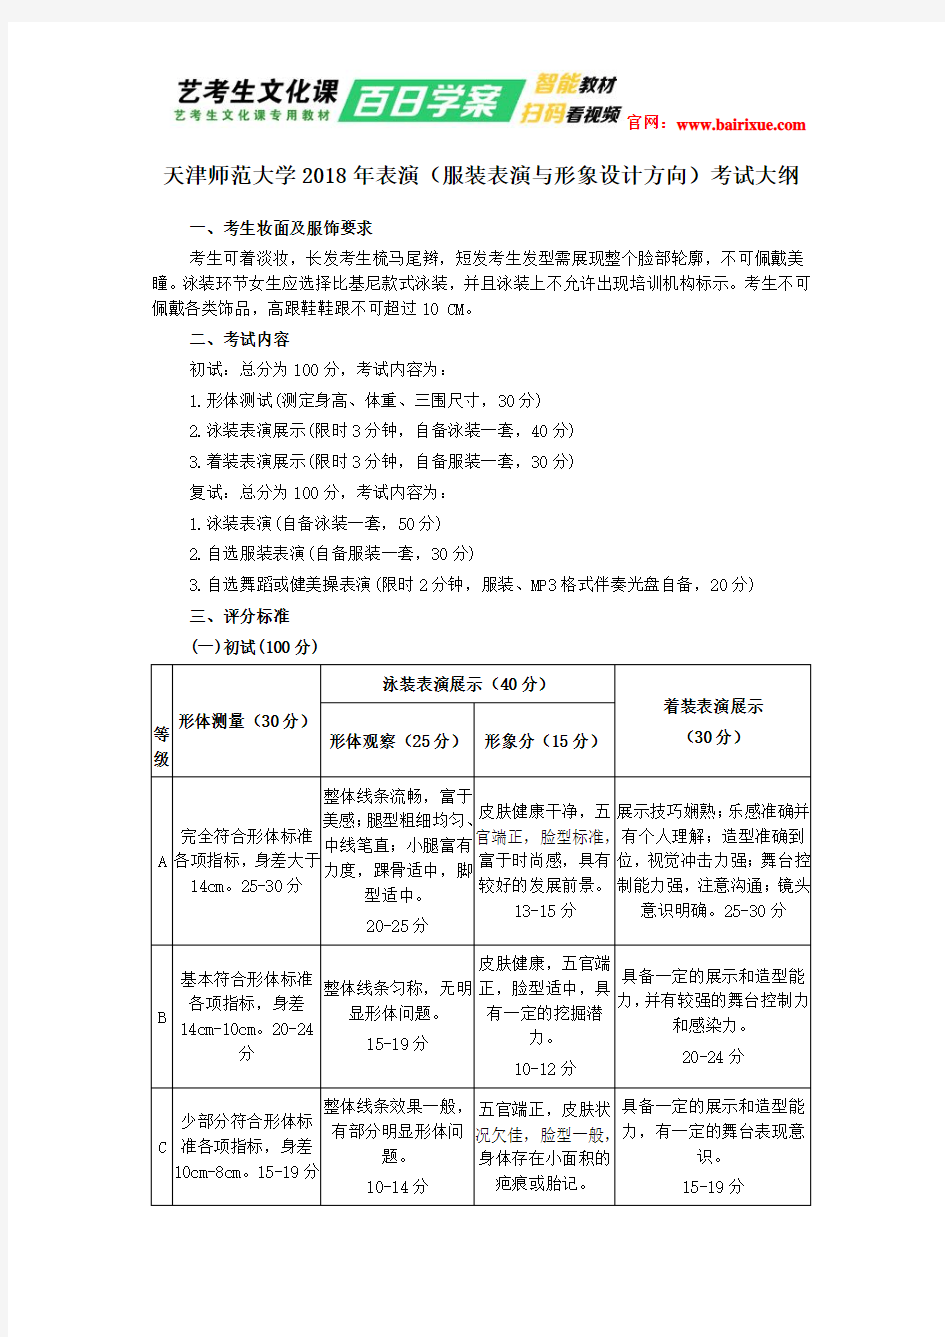 天津师范大学2018年表演(服装表演与形象设计方向)考试大纲